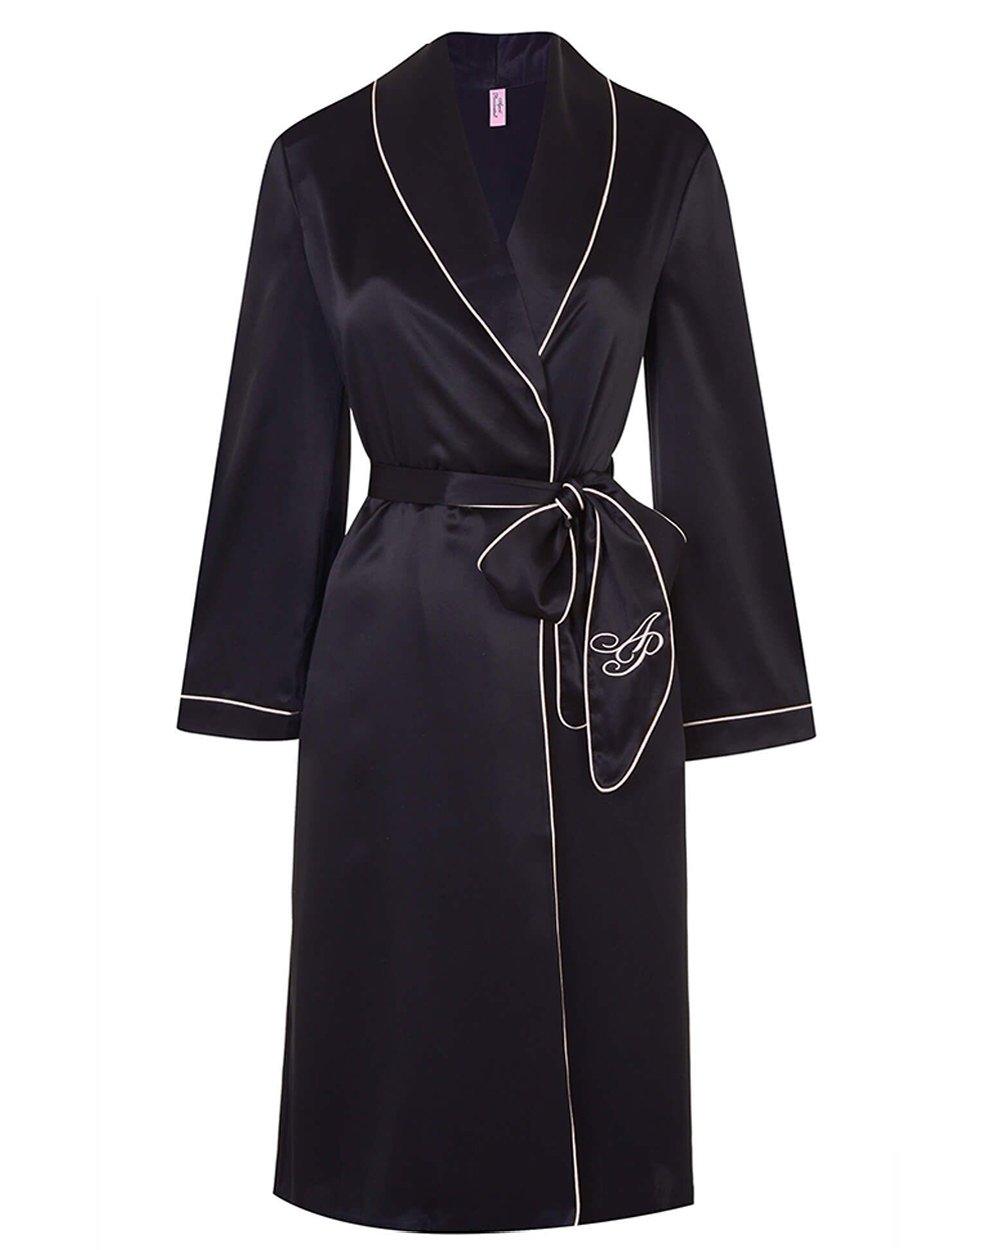 Agent Provocateur-Robes-Classic Dressing Gown-brava-boutique